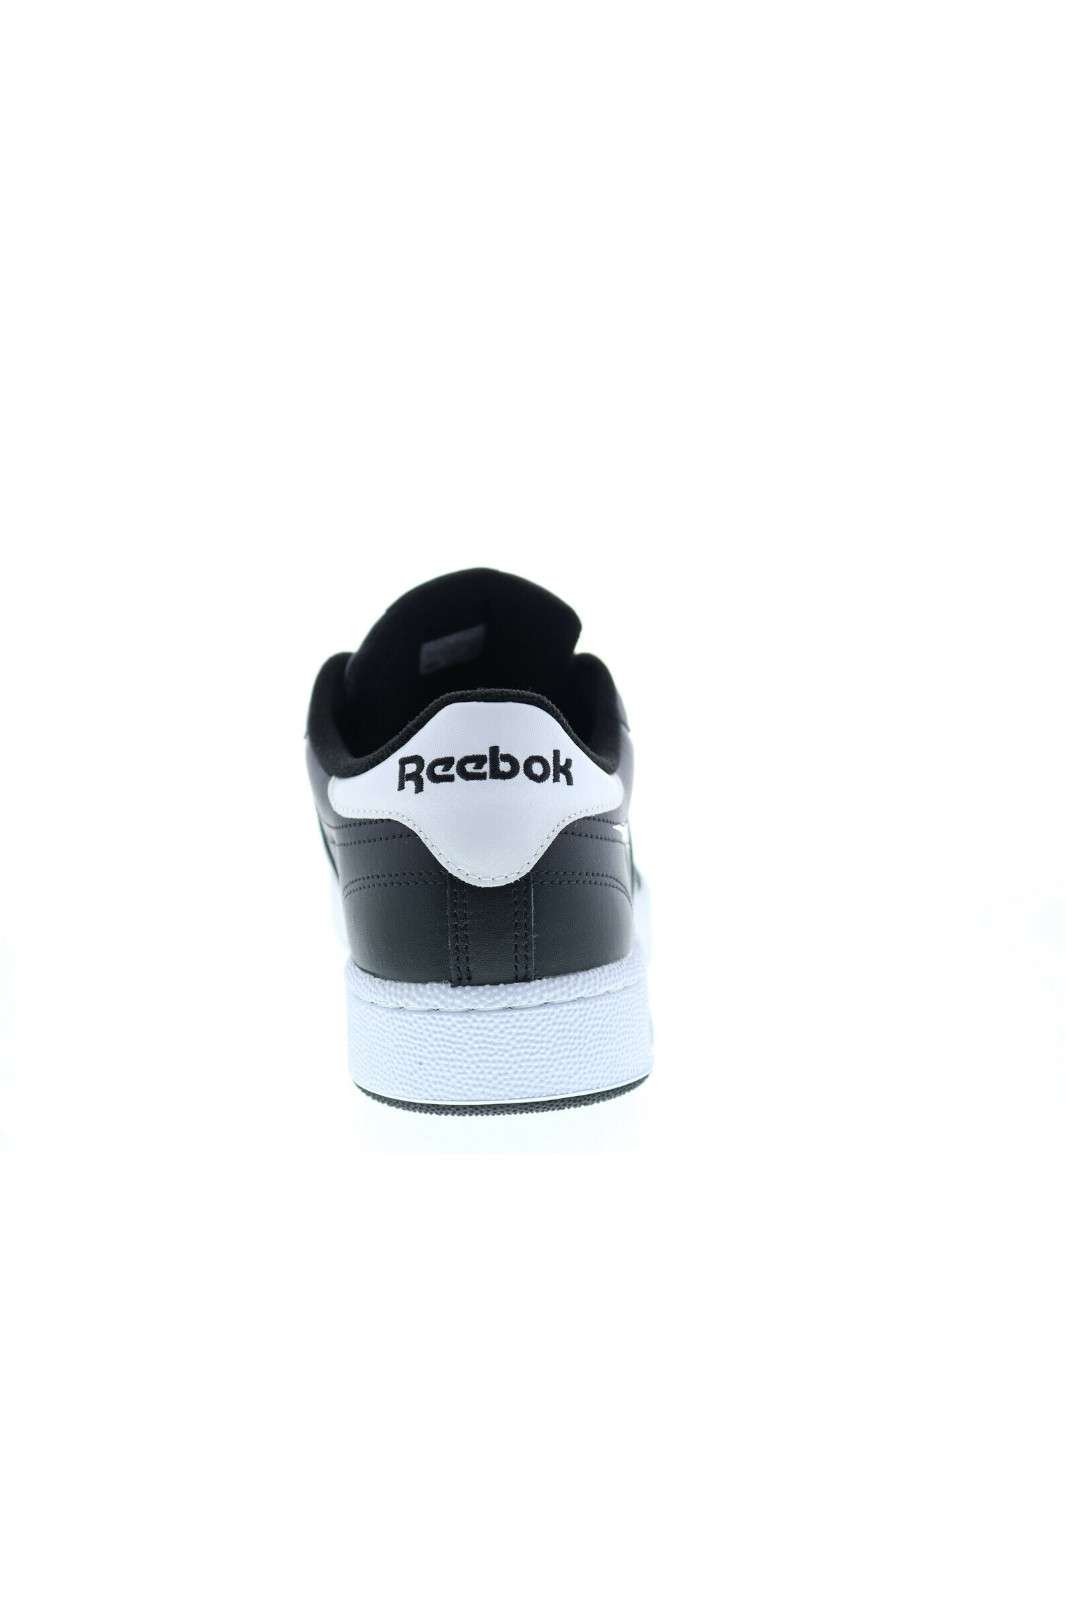 Reebok sneakers stringate CLUB C85